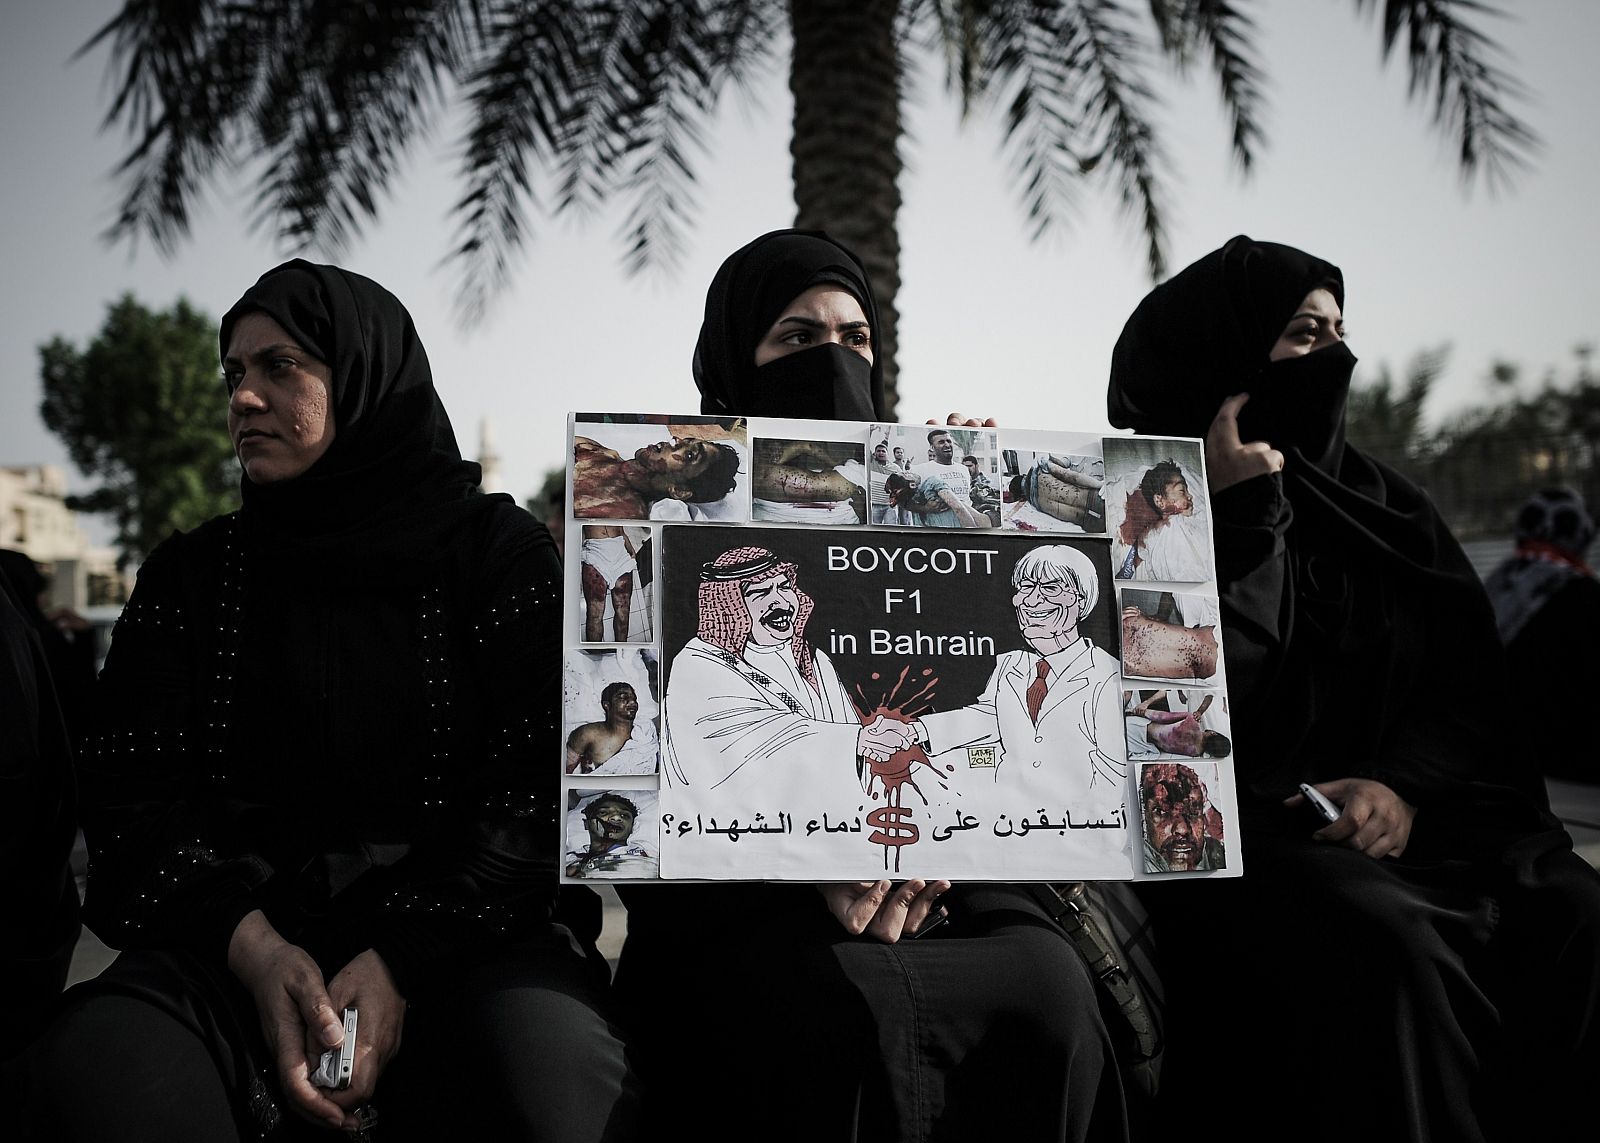 Mujeres de Bahréin se manifiestan en contra del GP de Fórmula 1